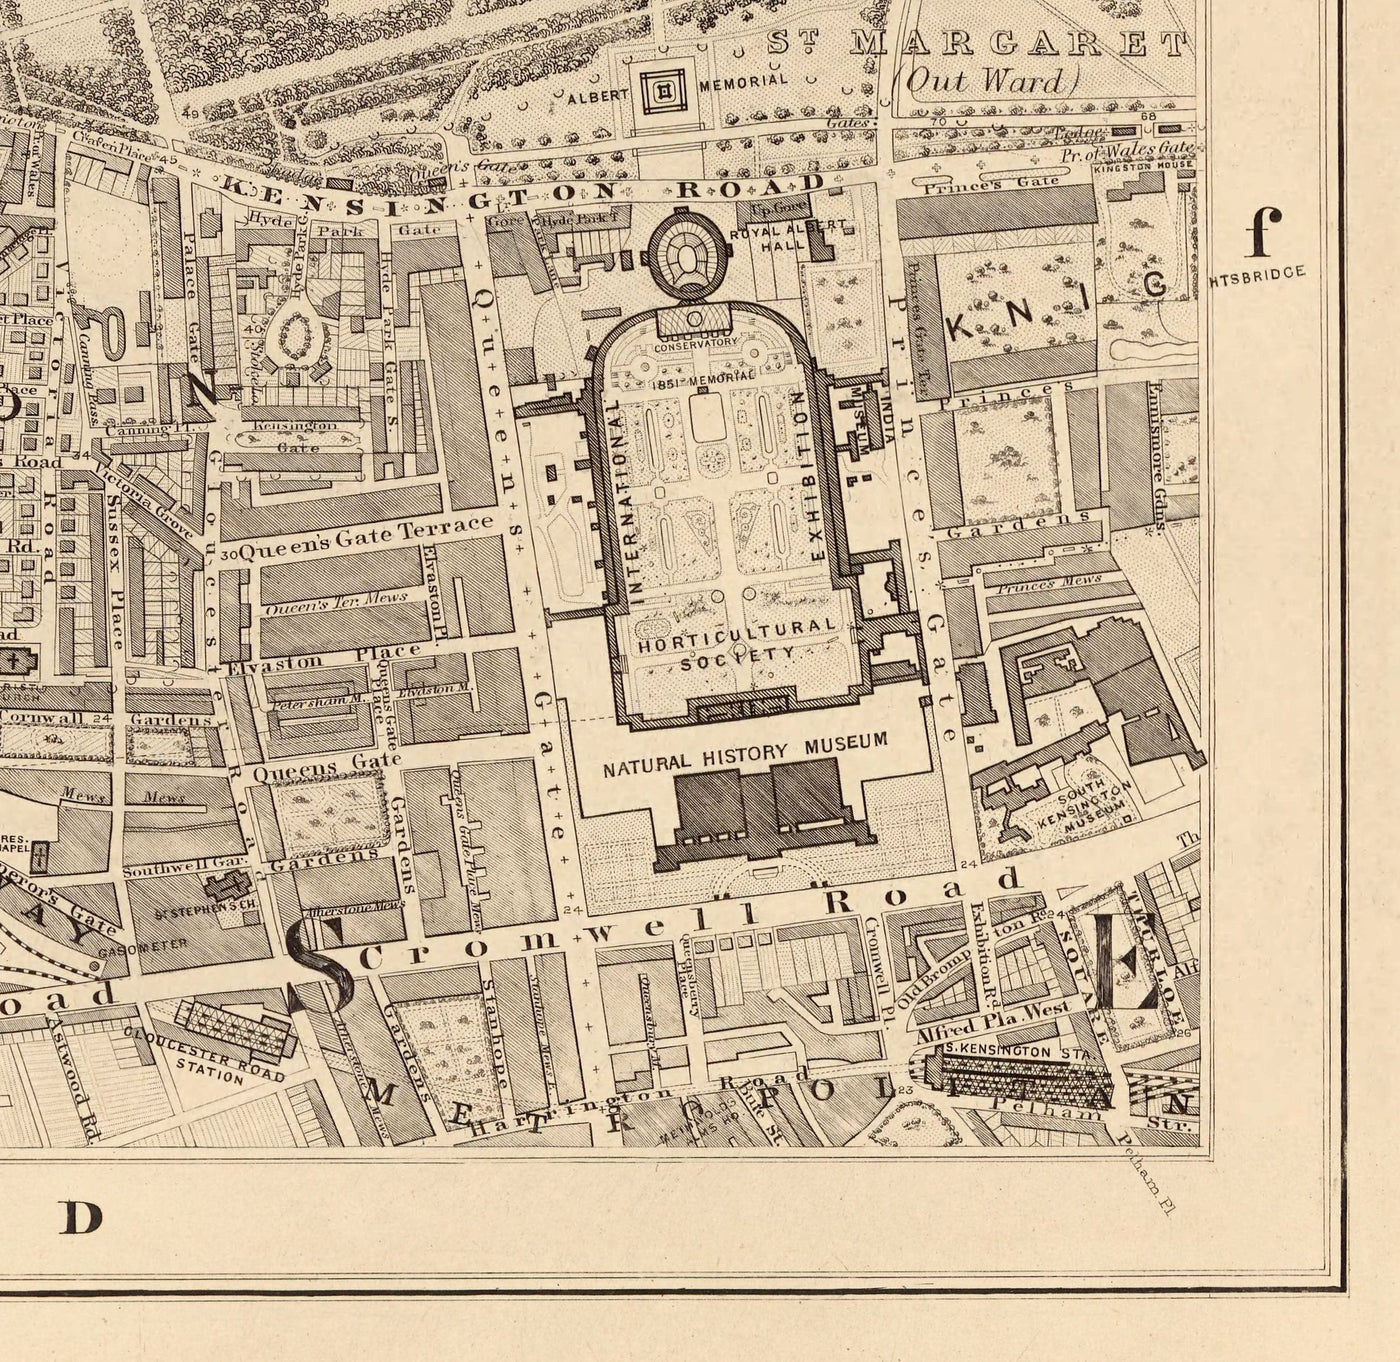 Alte Karte von West London, 1862 von Edward Stanford - Notting Hill, Kensington, Portobello Road, Shepherds Bush, Bayswater - W11, W2, W8, SW7, W14, W6, W12, W10